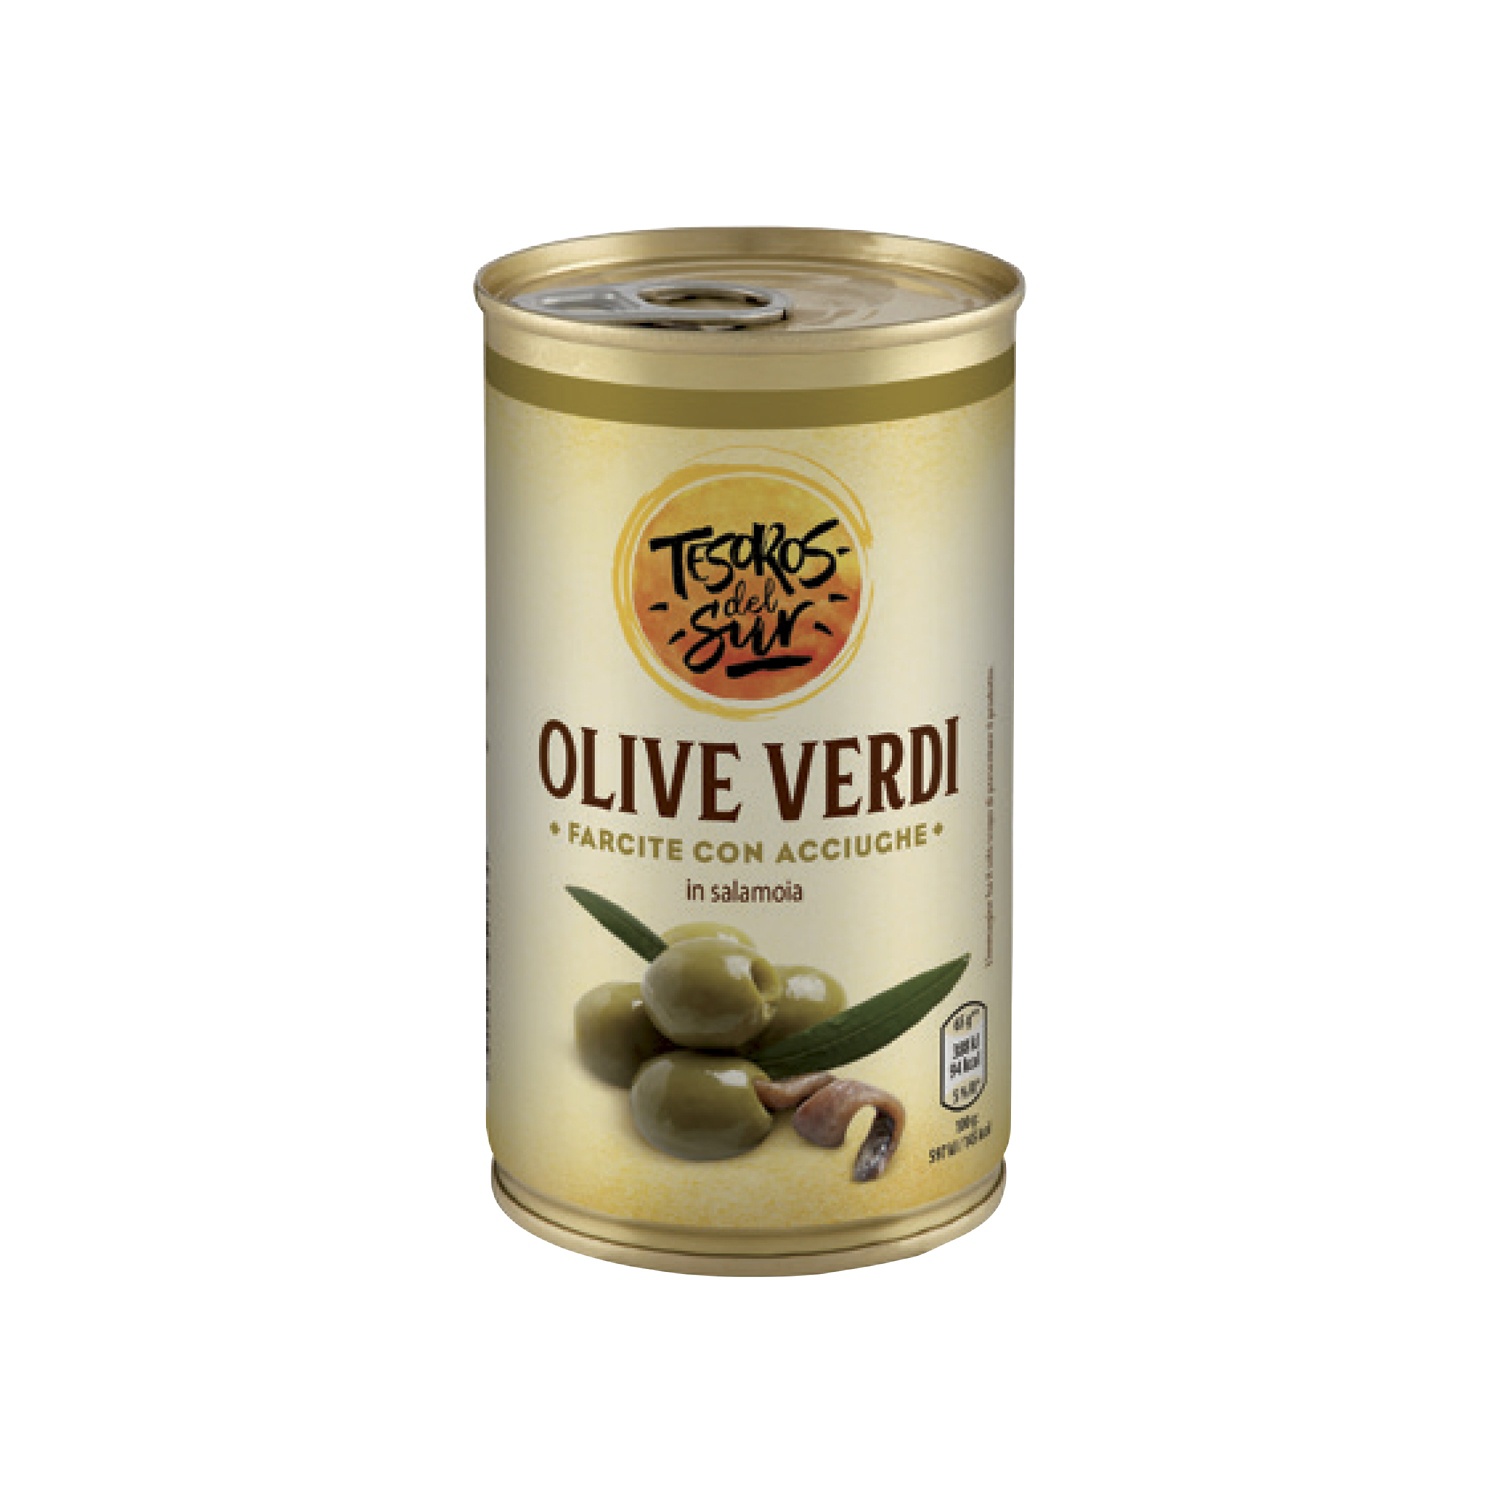 TESOROS DEL SUR Olive verdi farcite con acciughe